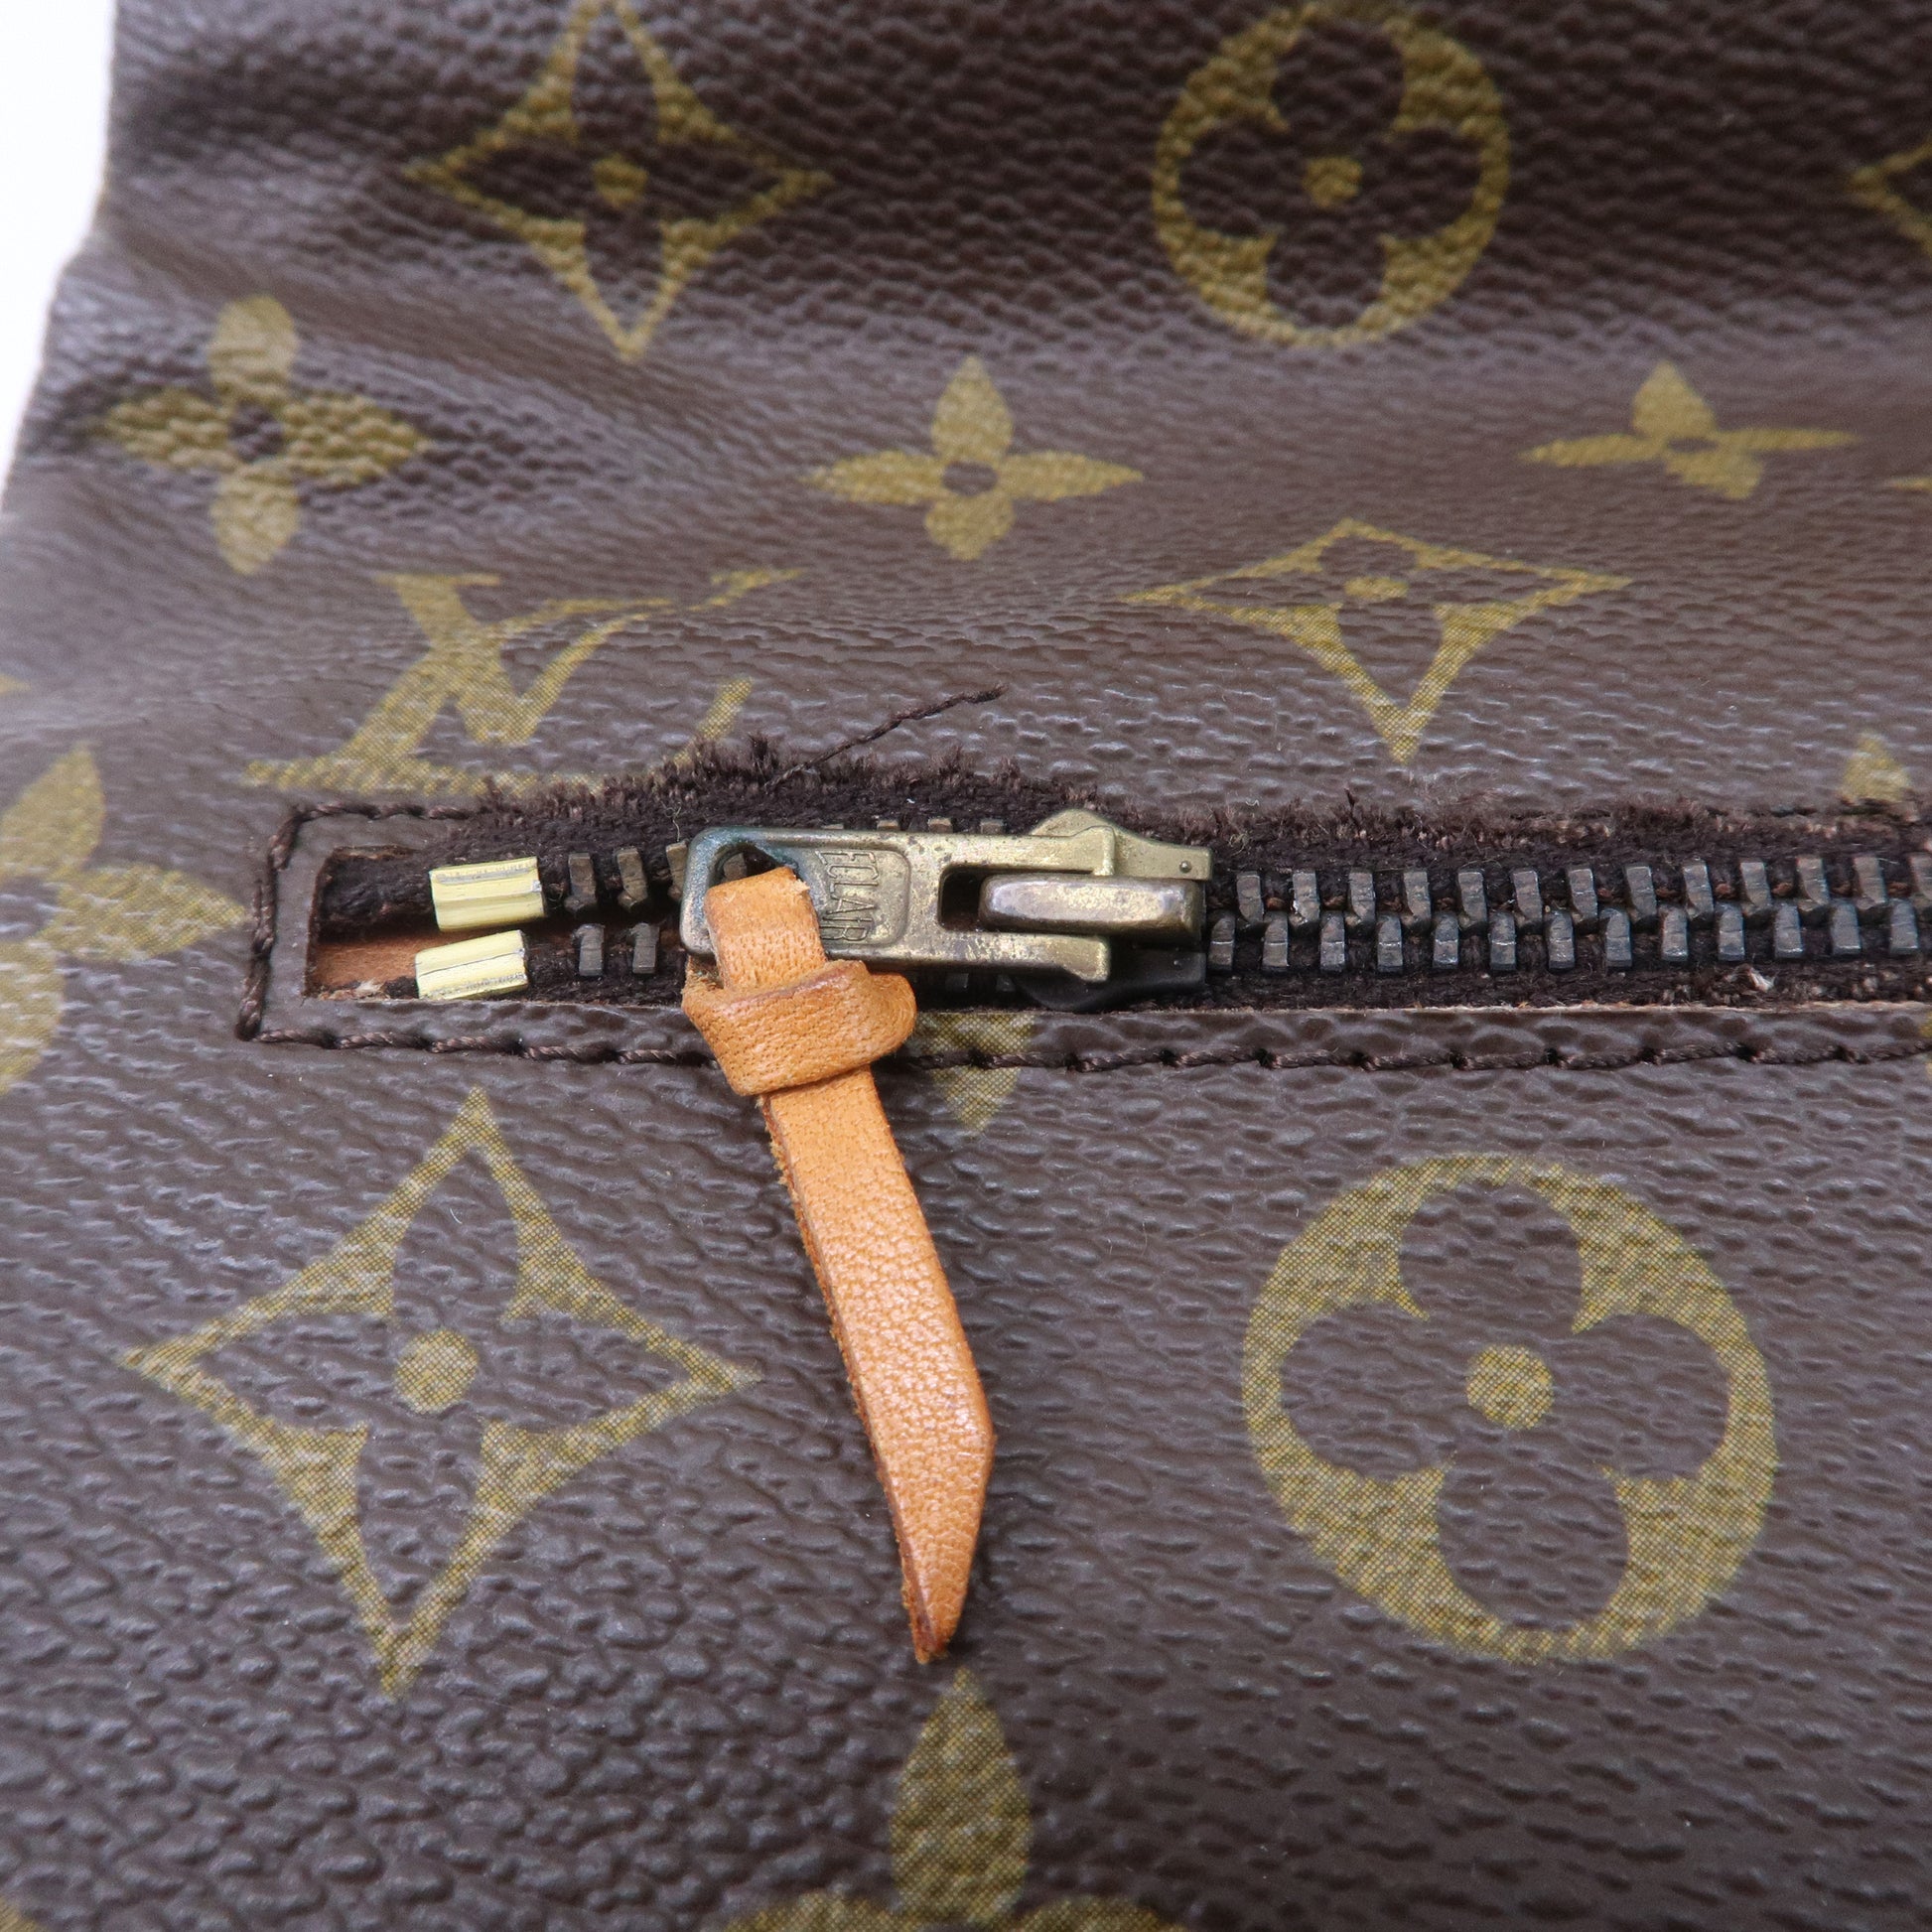 LOUIS VUITTON POCHETTE PLIANTE Vintage Clutch Bag Purse Monogram M51805  Brown